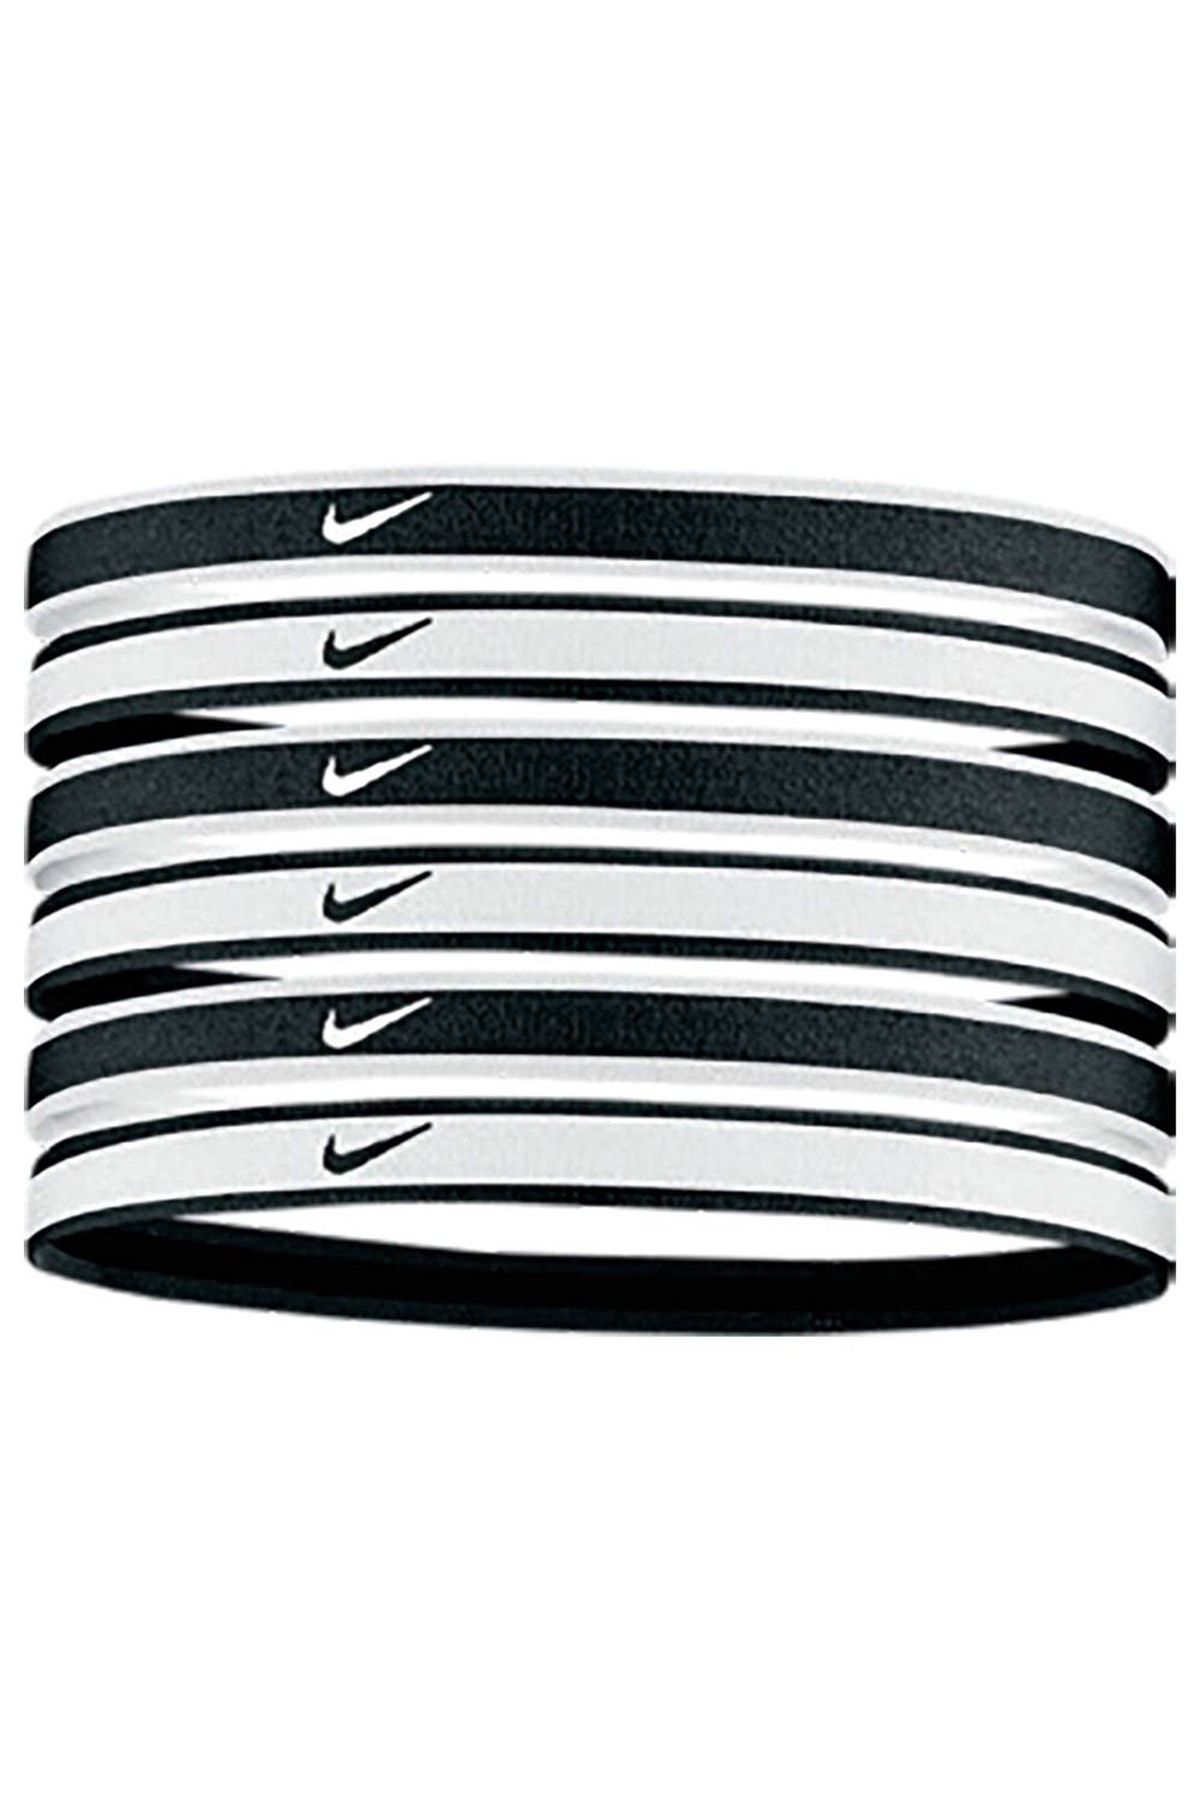 Nike Haarband Elastic Hairband Unisex Fitnessband Sportband Stirnband 6-er  Pack